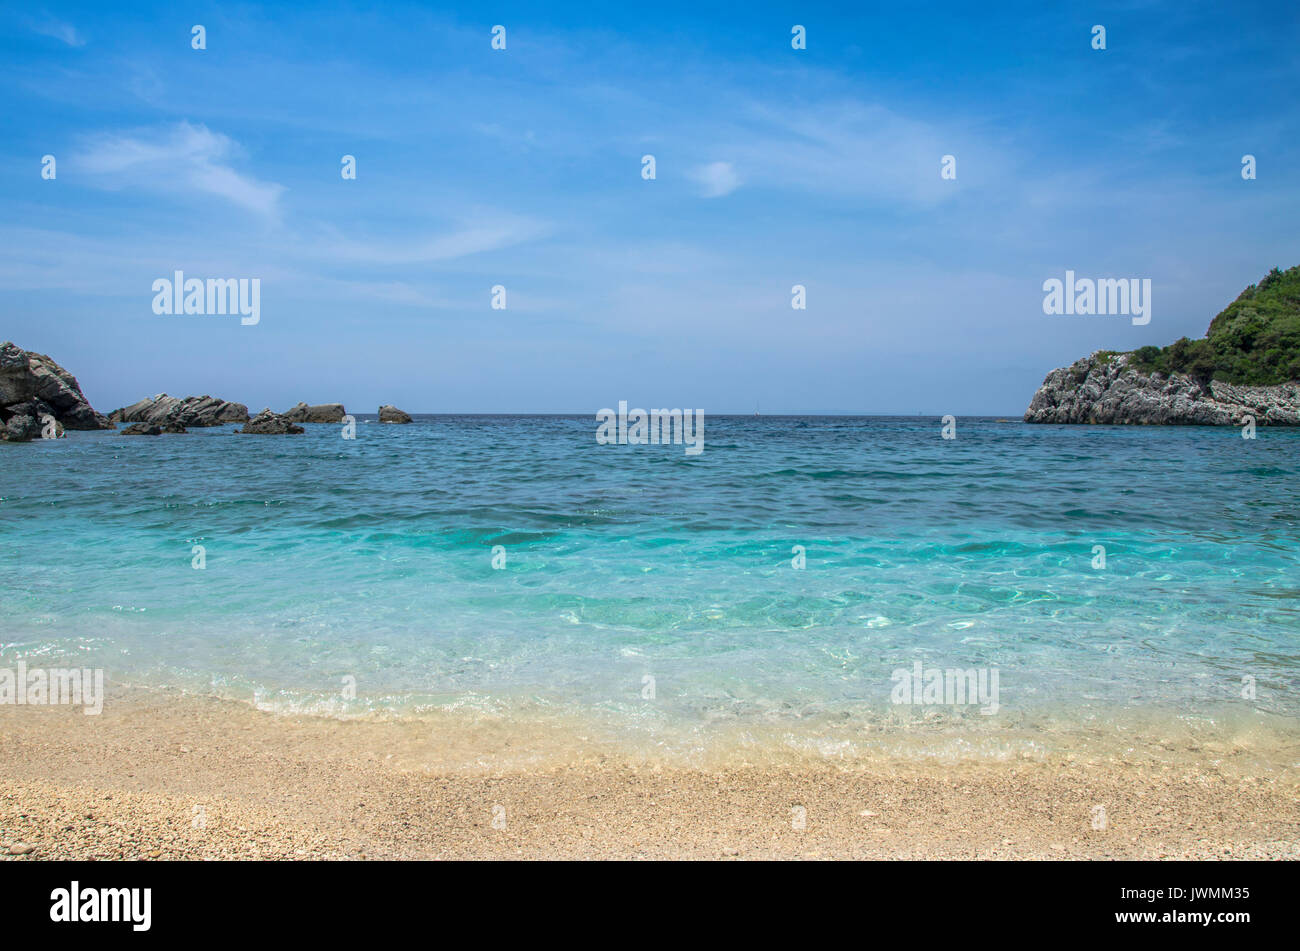 Schöner Strand Szene - Sarakiniko Beach in der Nähe von Parga, Griechenland Stockfoto